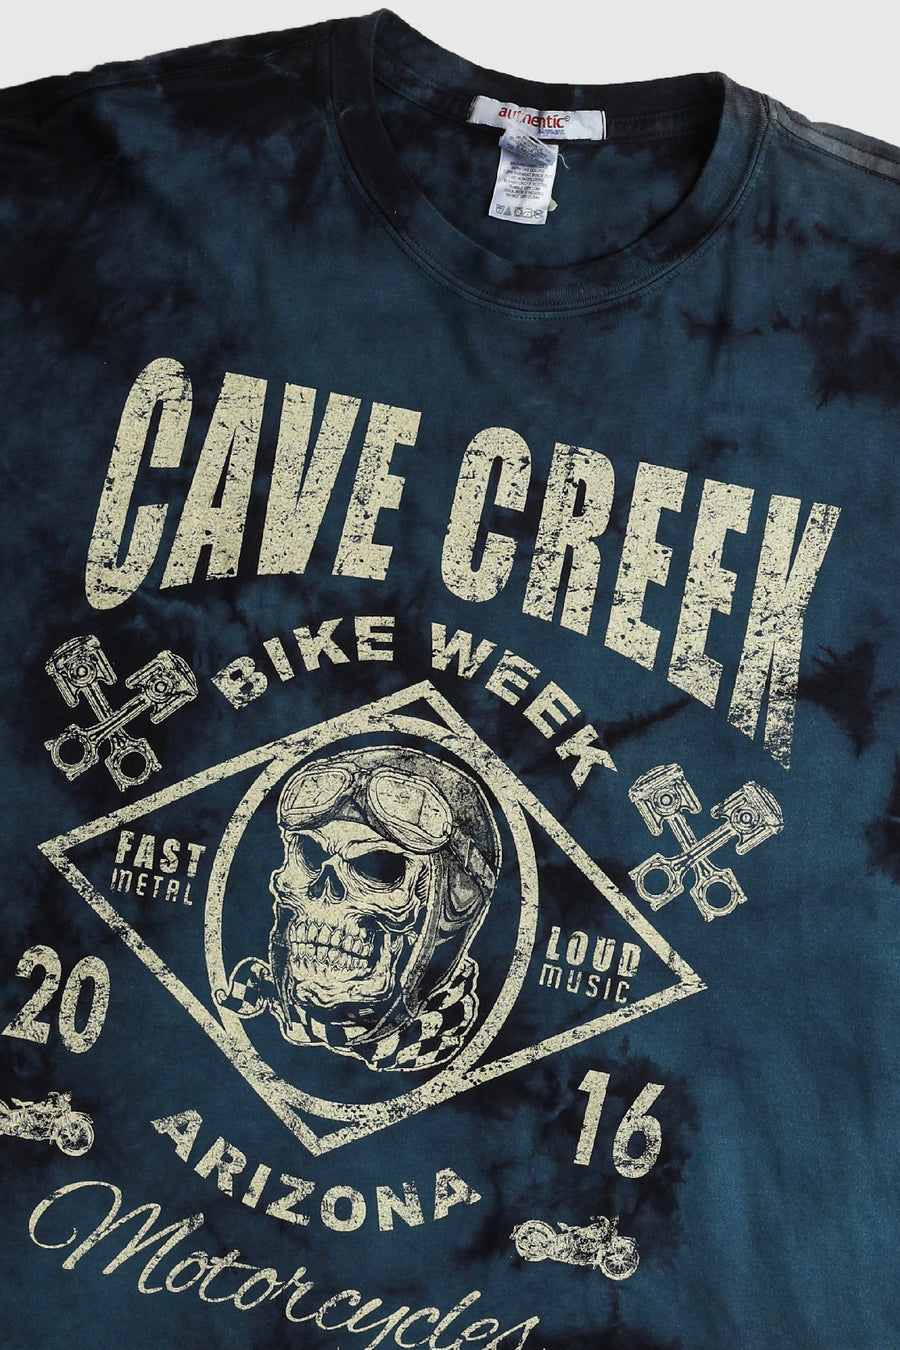 Deadstock Cave Creek Bike Week Tee - Red, Blue